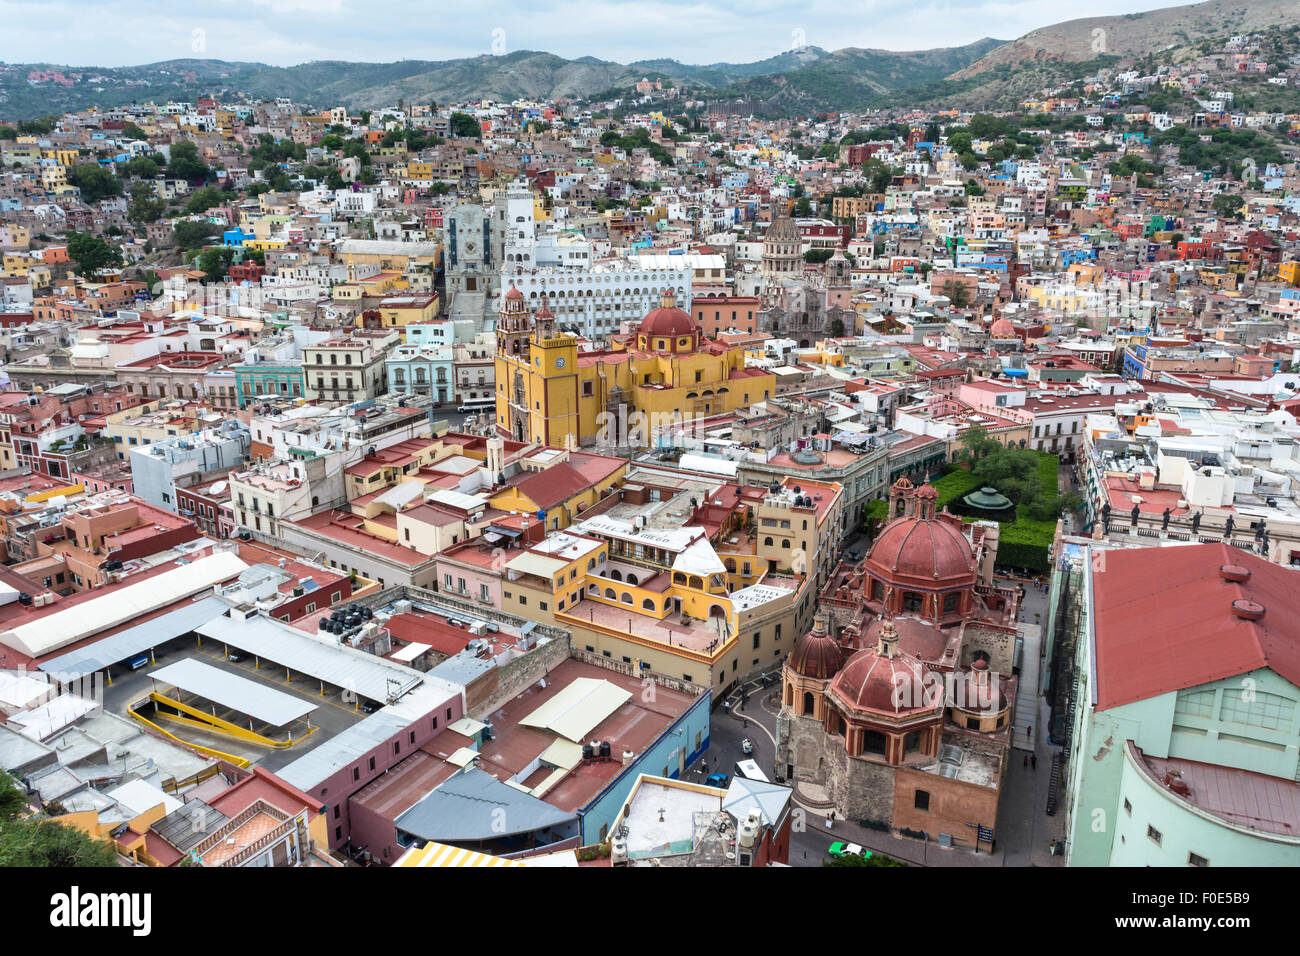 Colorful buildings in Guanajuato, Mexico Stock Photo